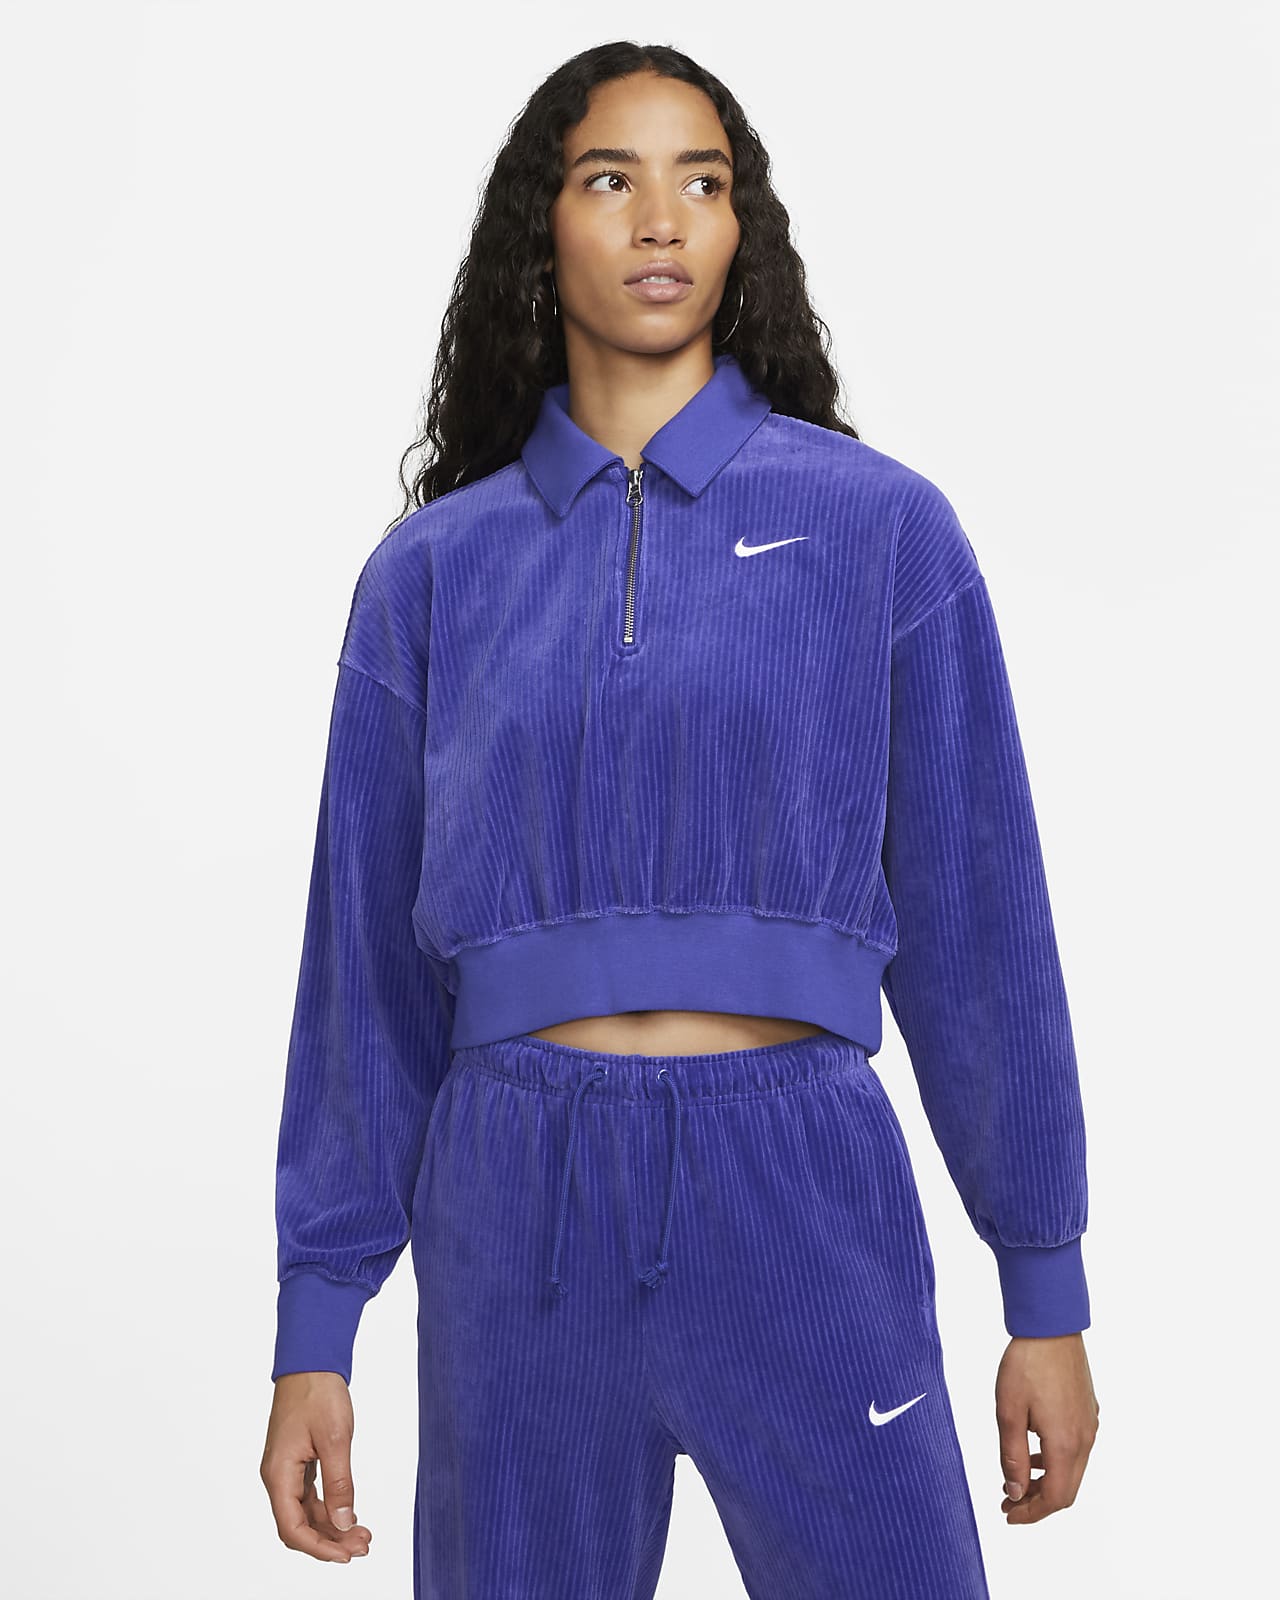 Nike Sportswear Women's Velour Top. Nike.com